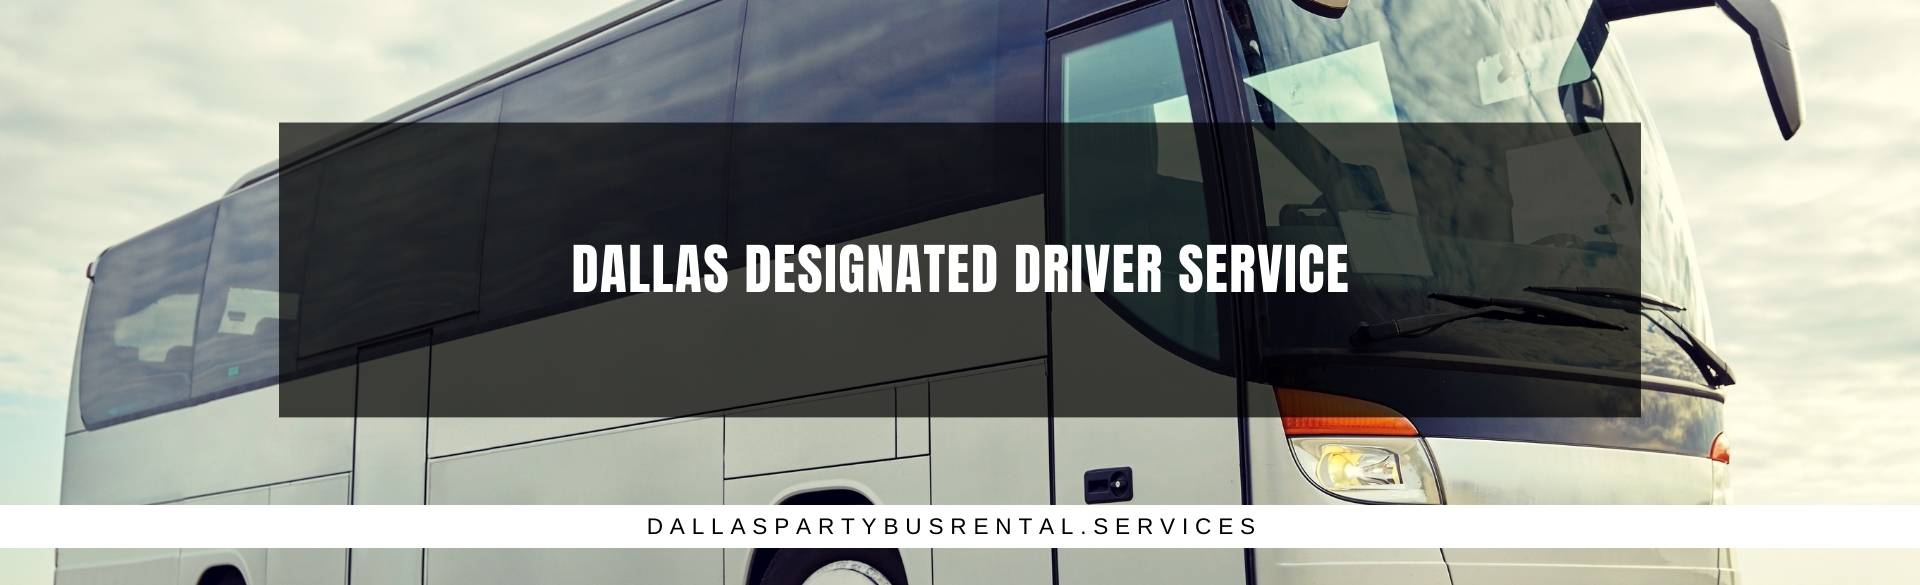 Dallas Designated Driver Service